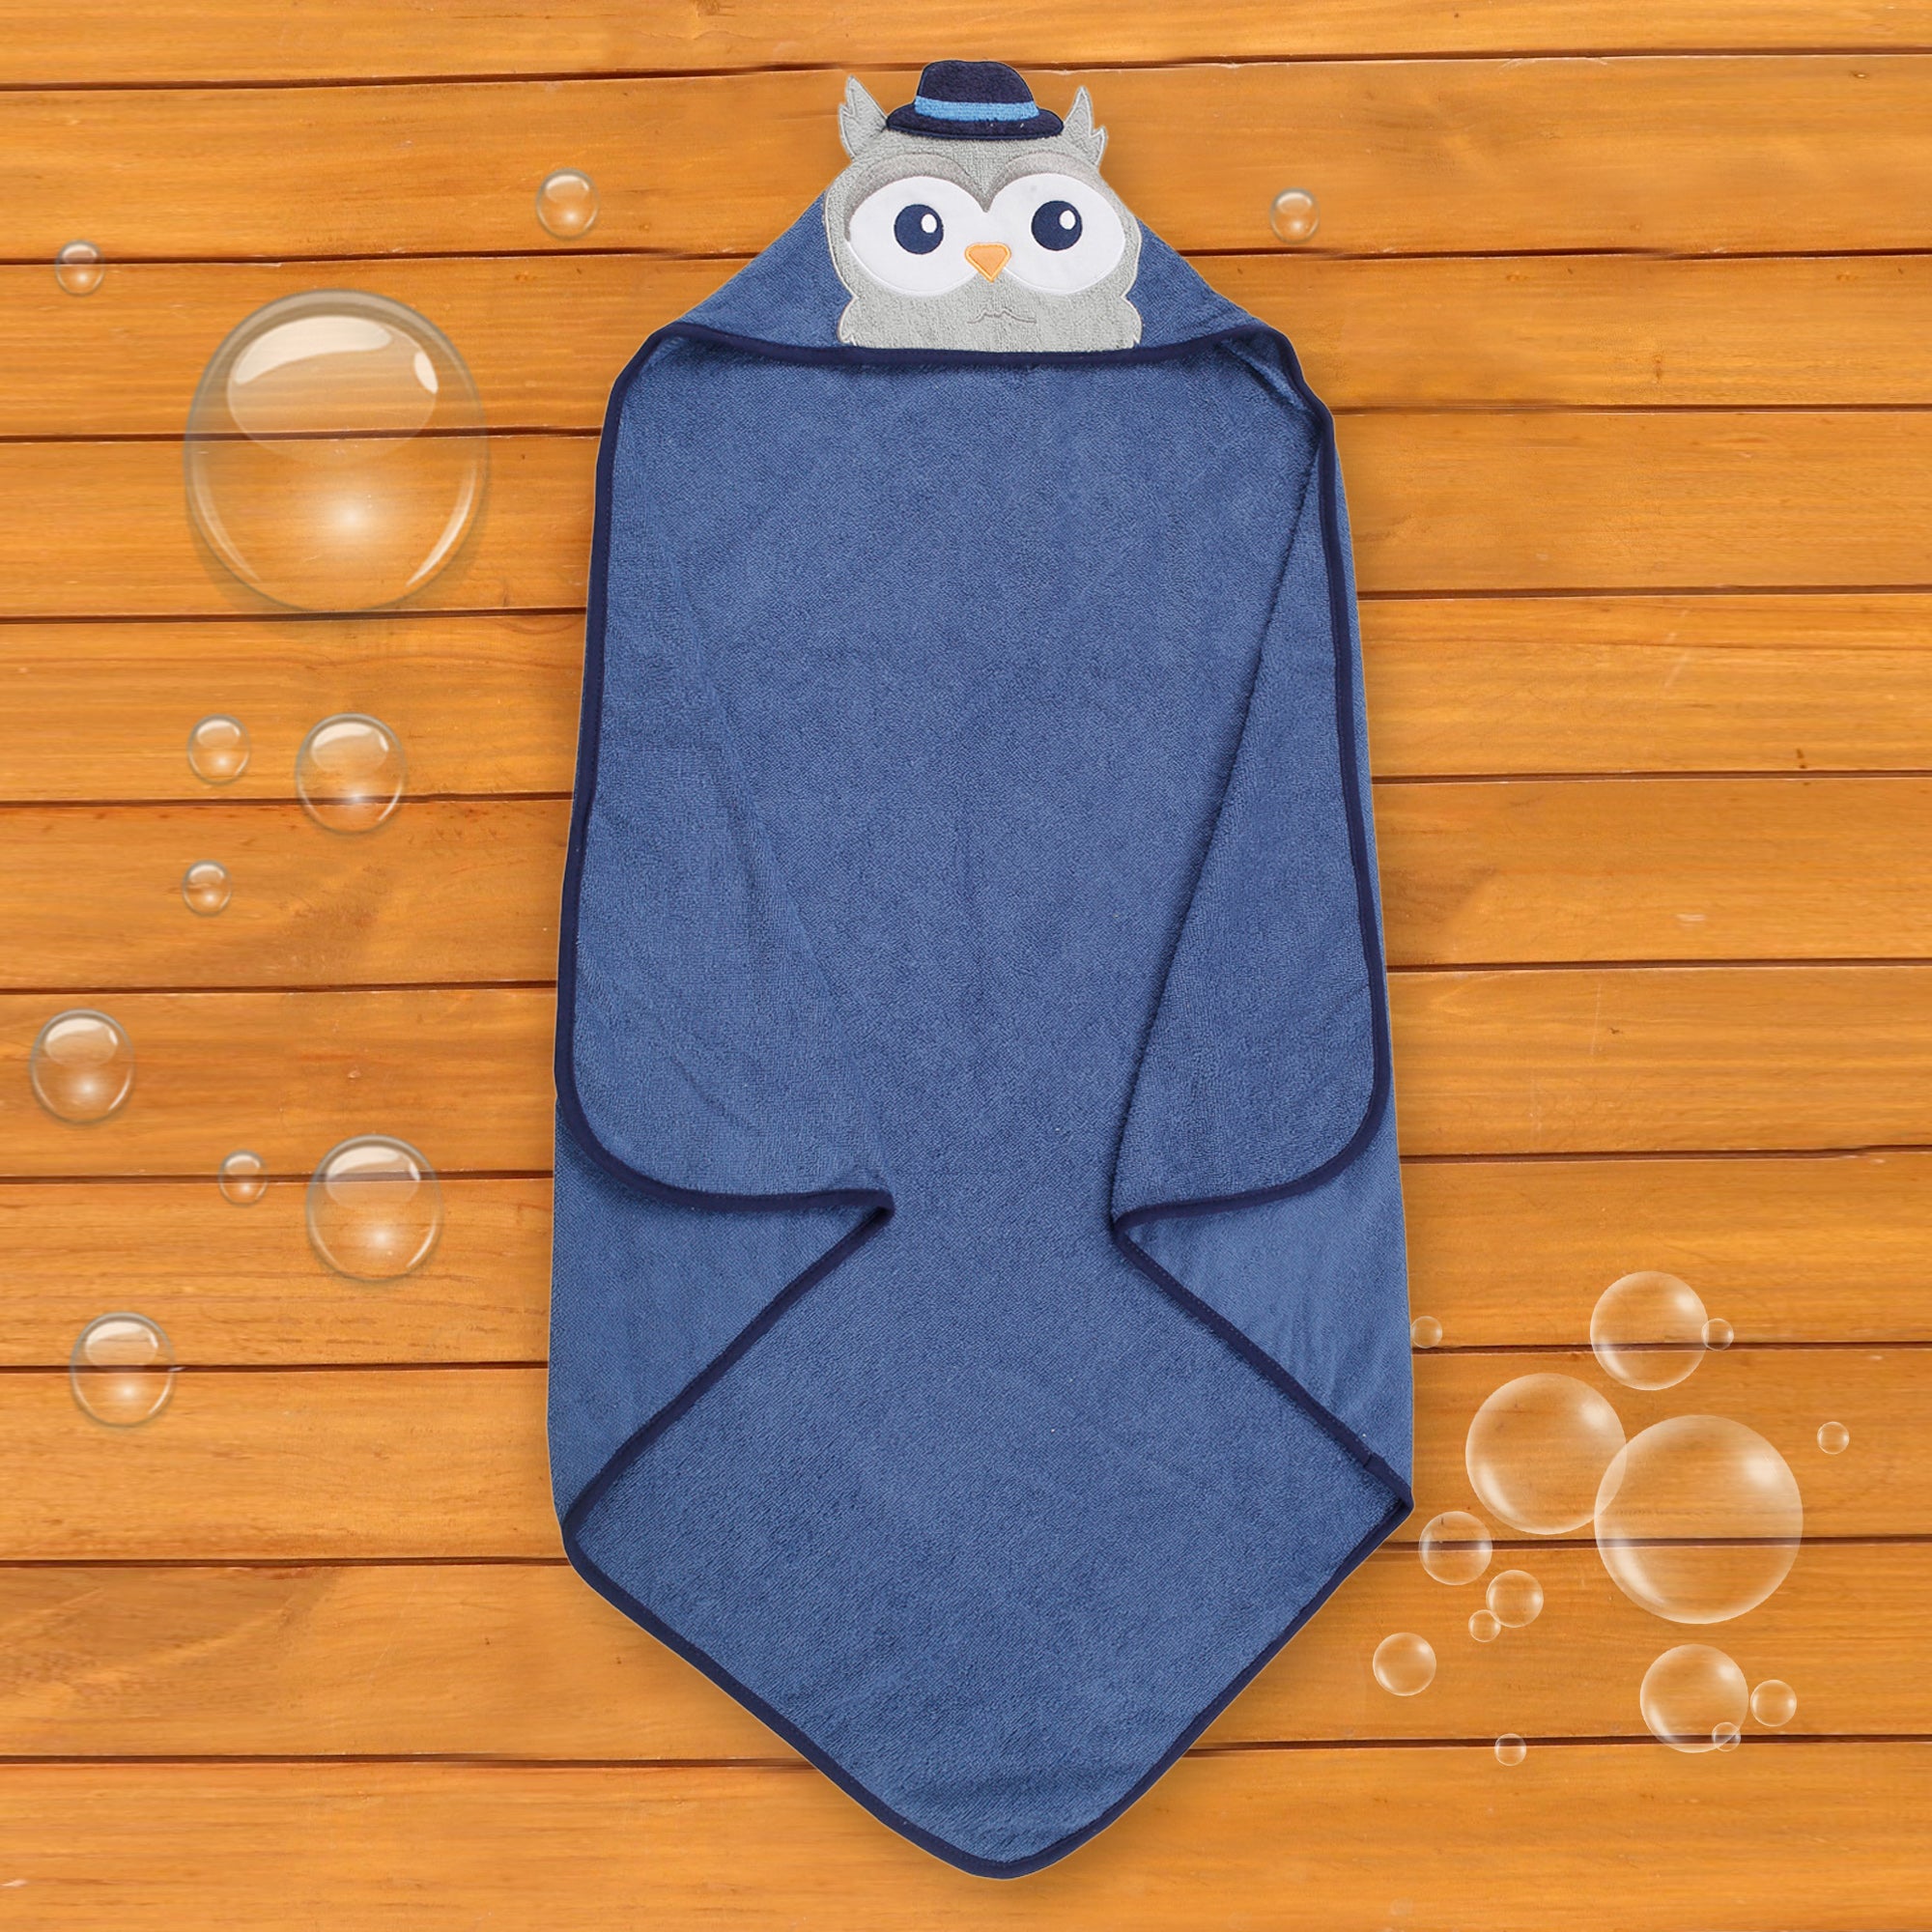 Baby Moo Mr. Owl Blue Hooded Towel